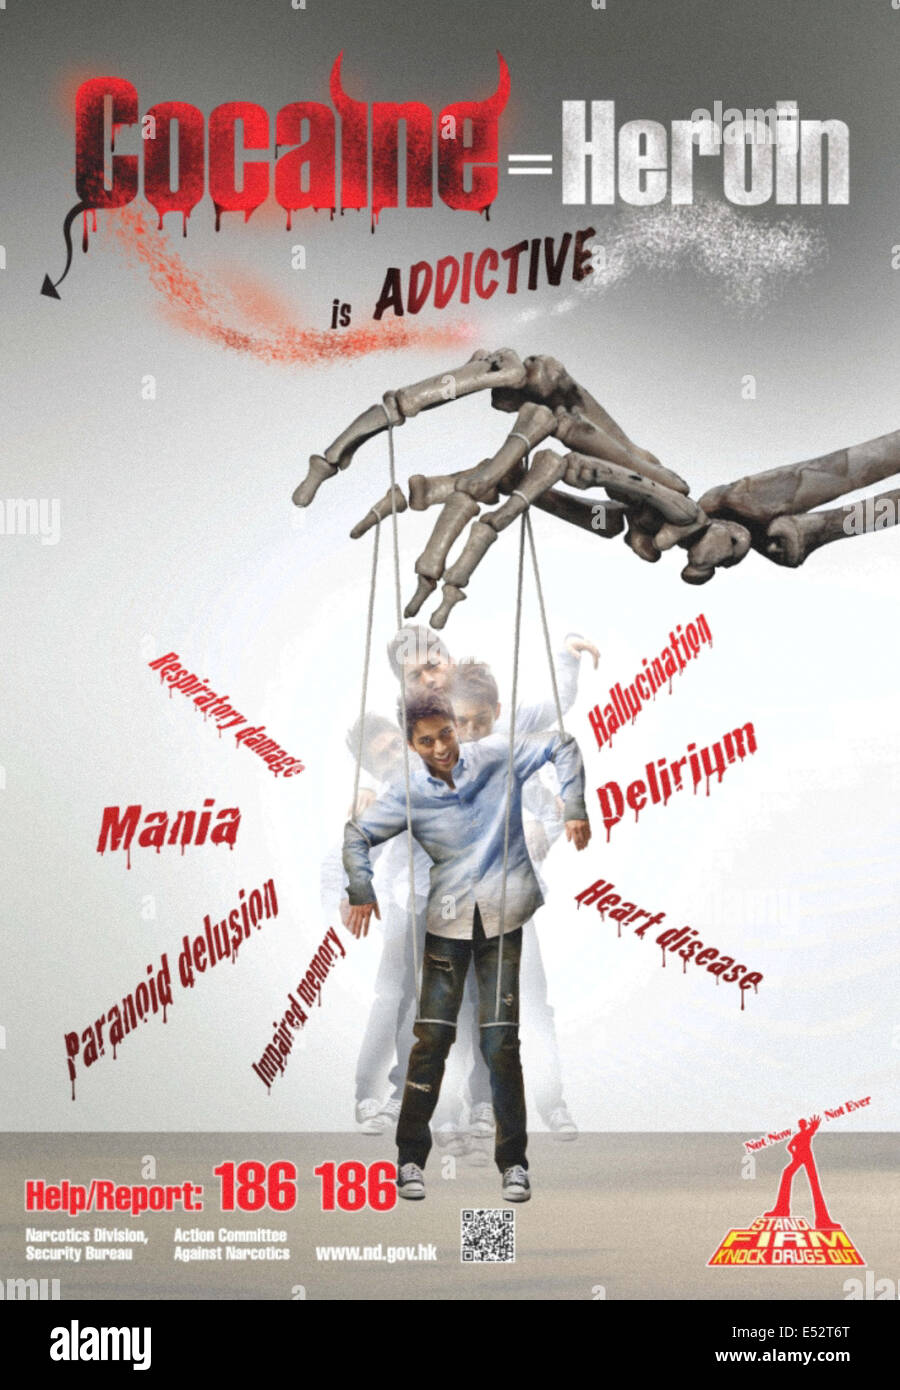 "Kokain ist süchtig" Plakat, in Hong Kong 2012 veröffentlicht. Siehe Beschreibung für weitere Informationen. Stockfoto